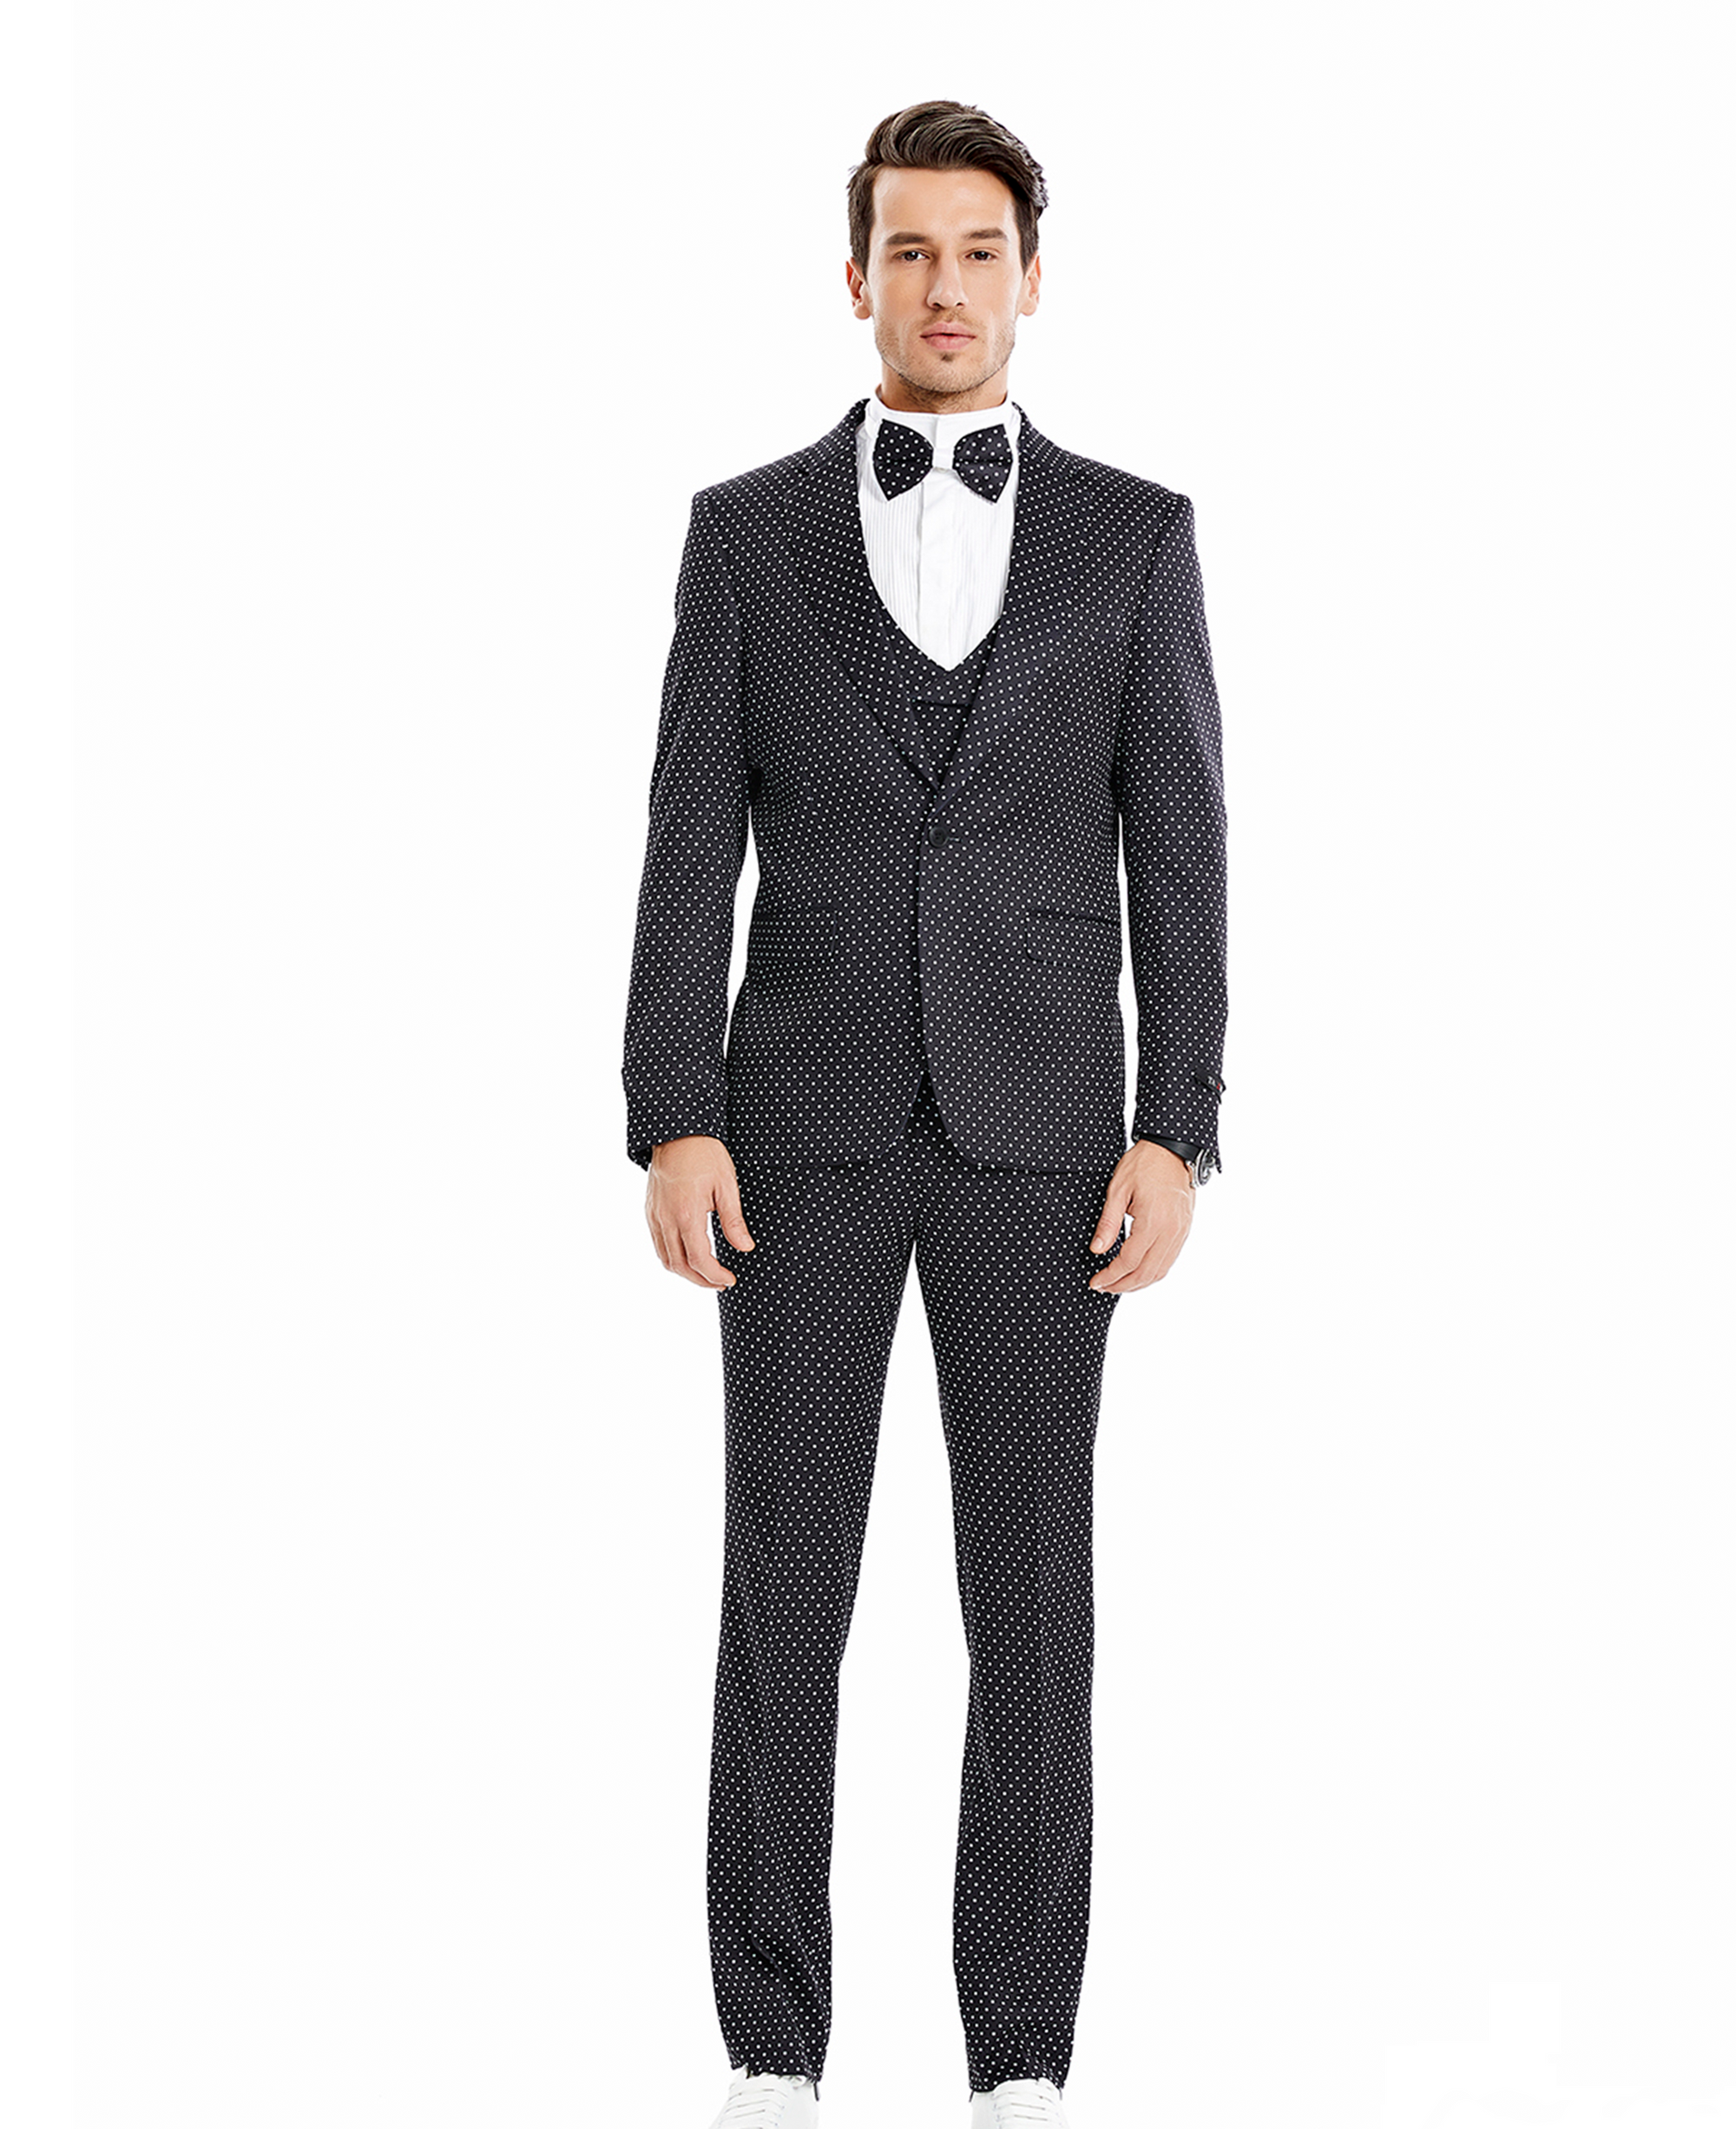 Men's Black/White Polka Dot Notch Lapel Suit